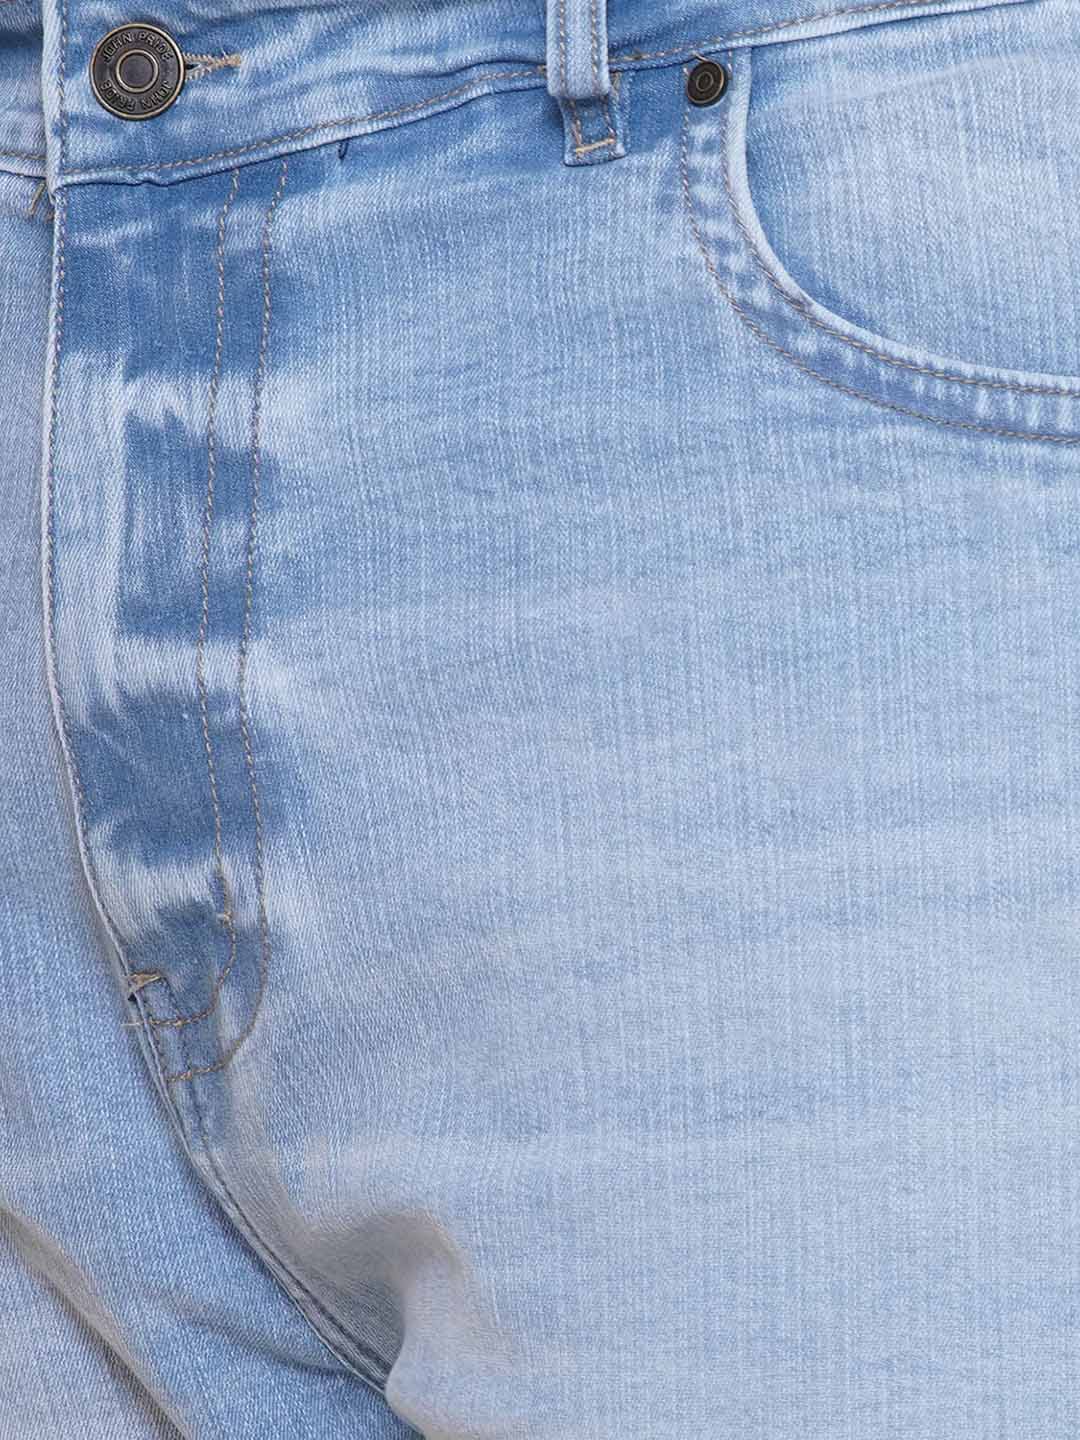 bottomwear/jeans/JPJ27110/jpj27110-2.jpg